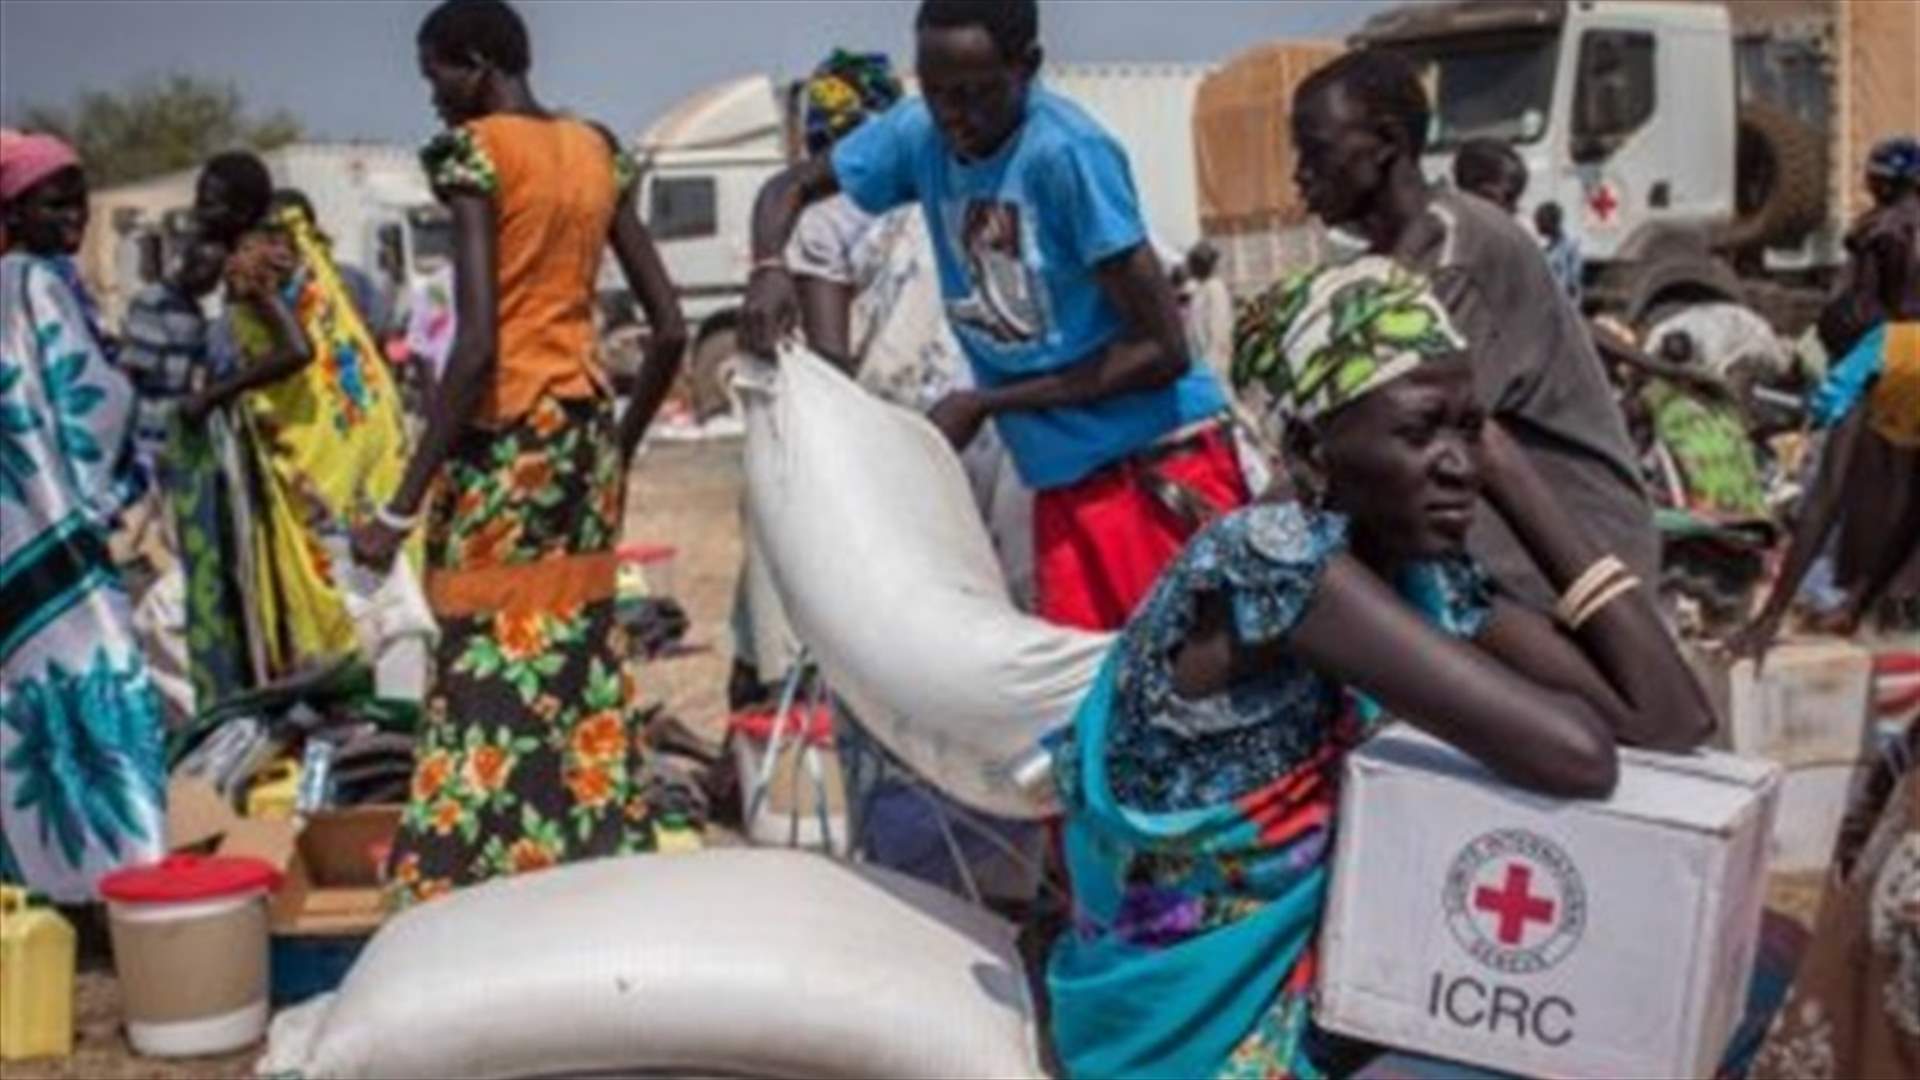 Aid convoys blocked in South Sudan, UN says